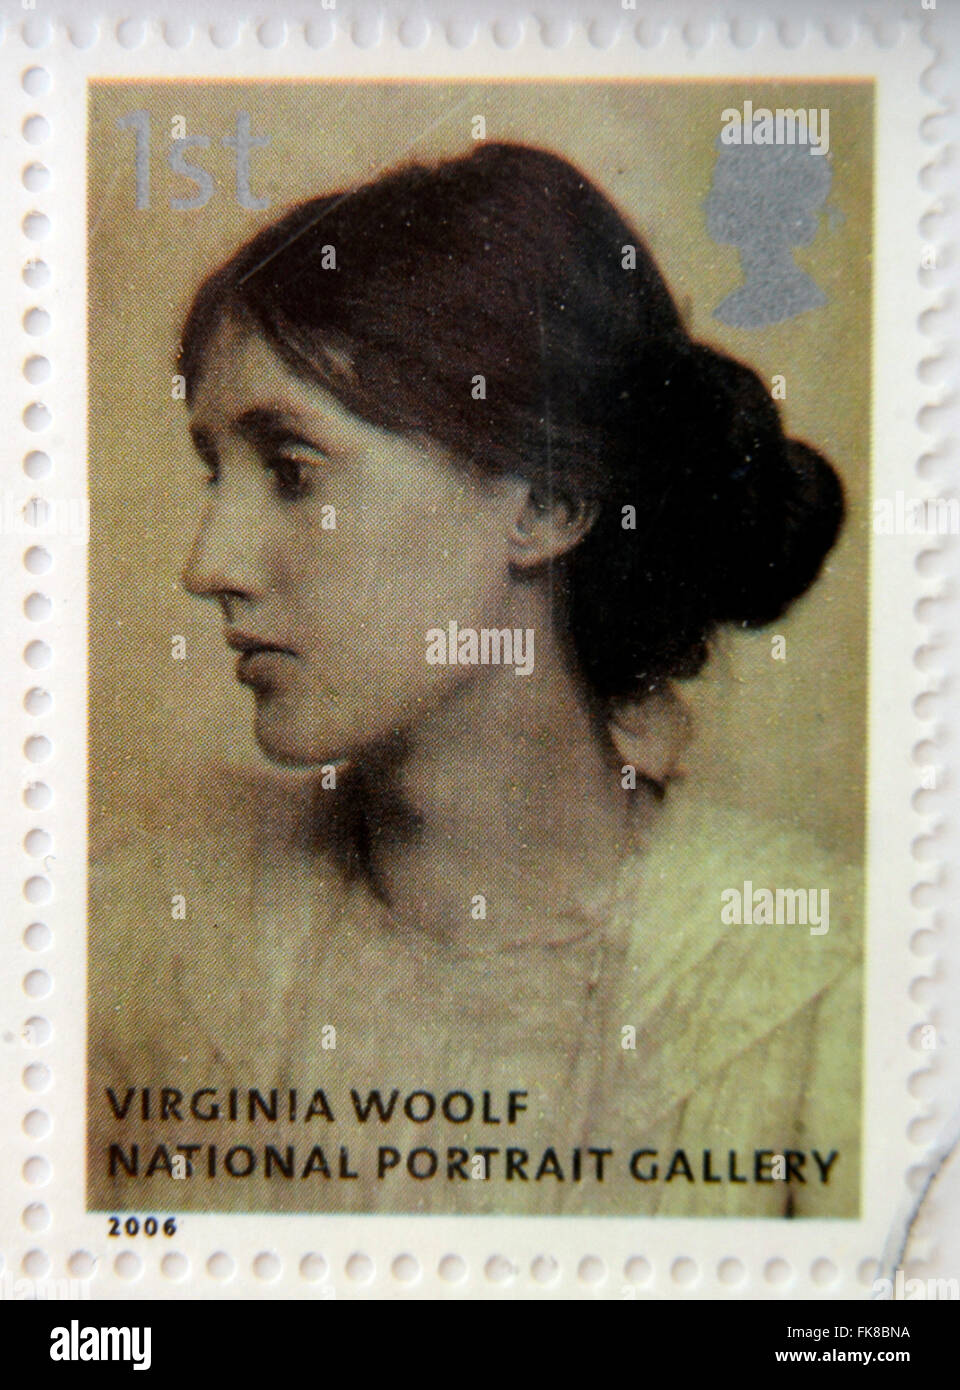 Royaume-uni - circa 2006 : timbre imprimé en Grande-Bretagne dédiée à la National Portrait Gallery, montre Virginia Woolf Banque D'Images